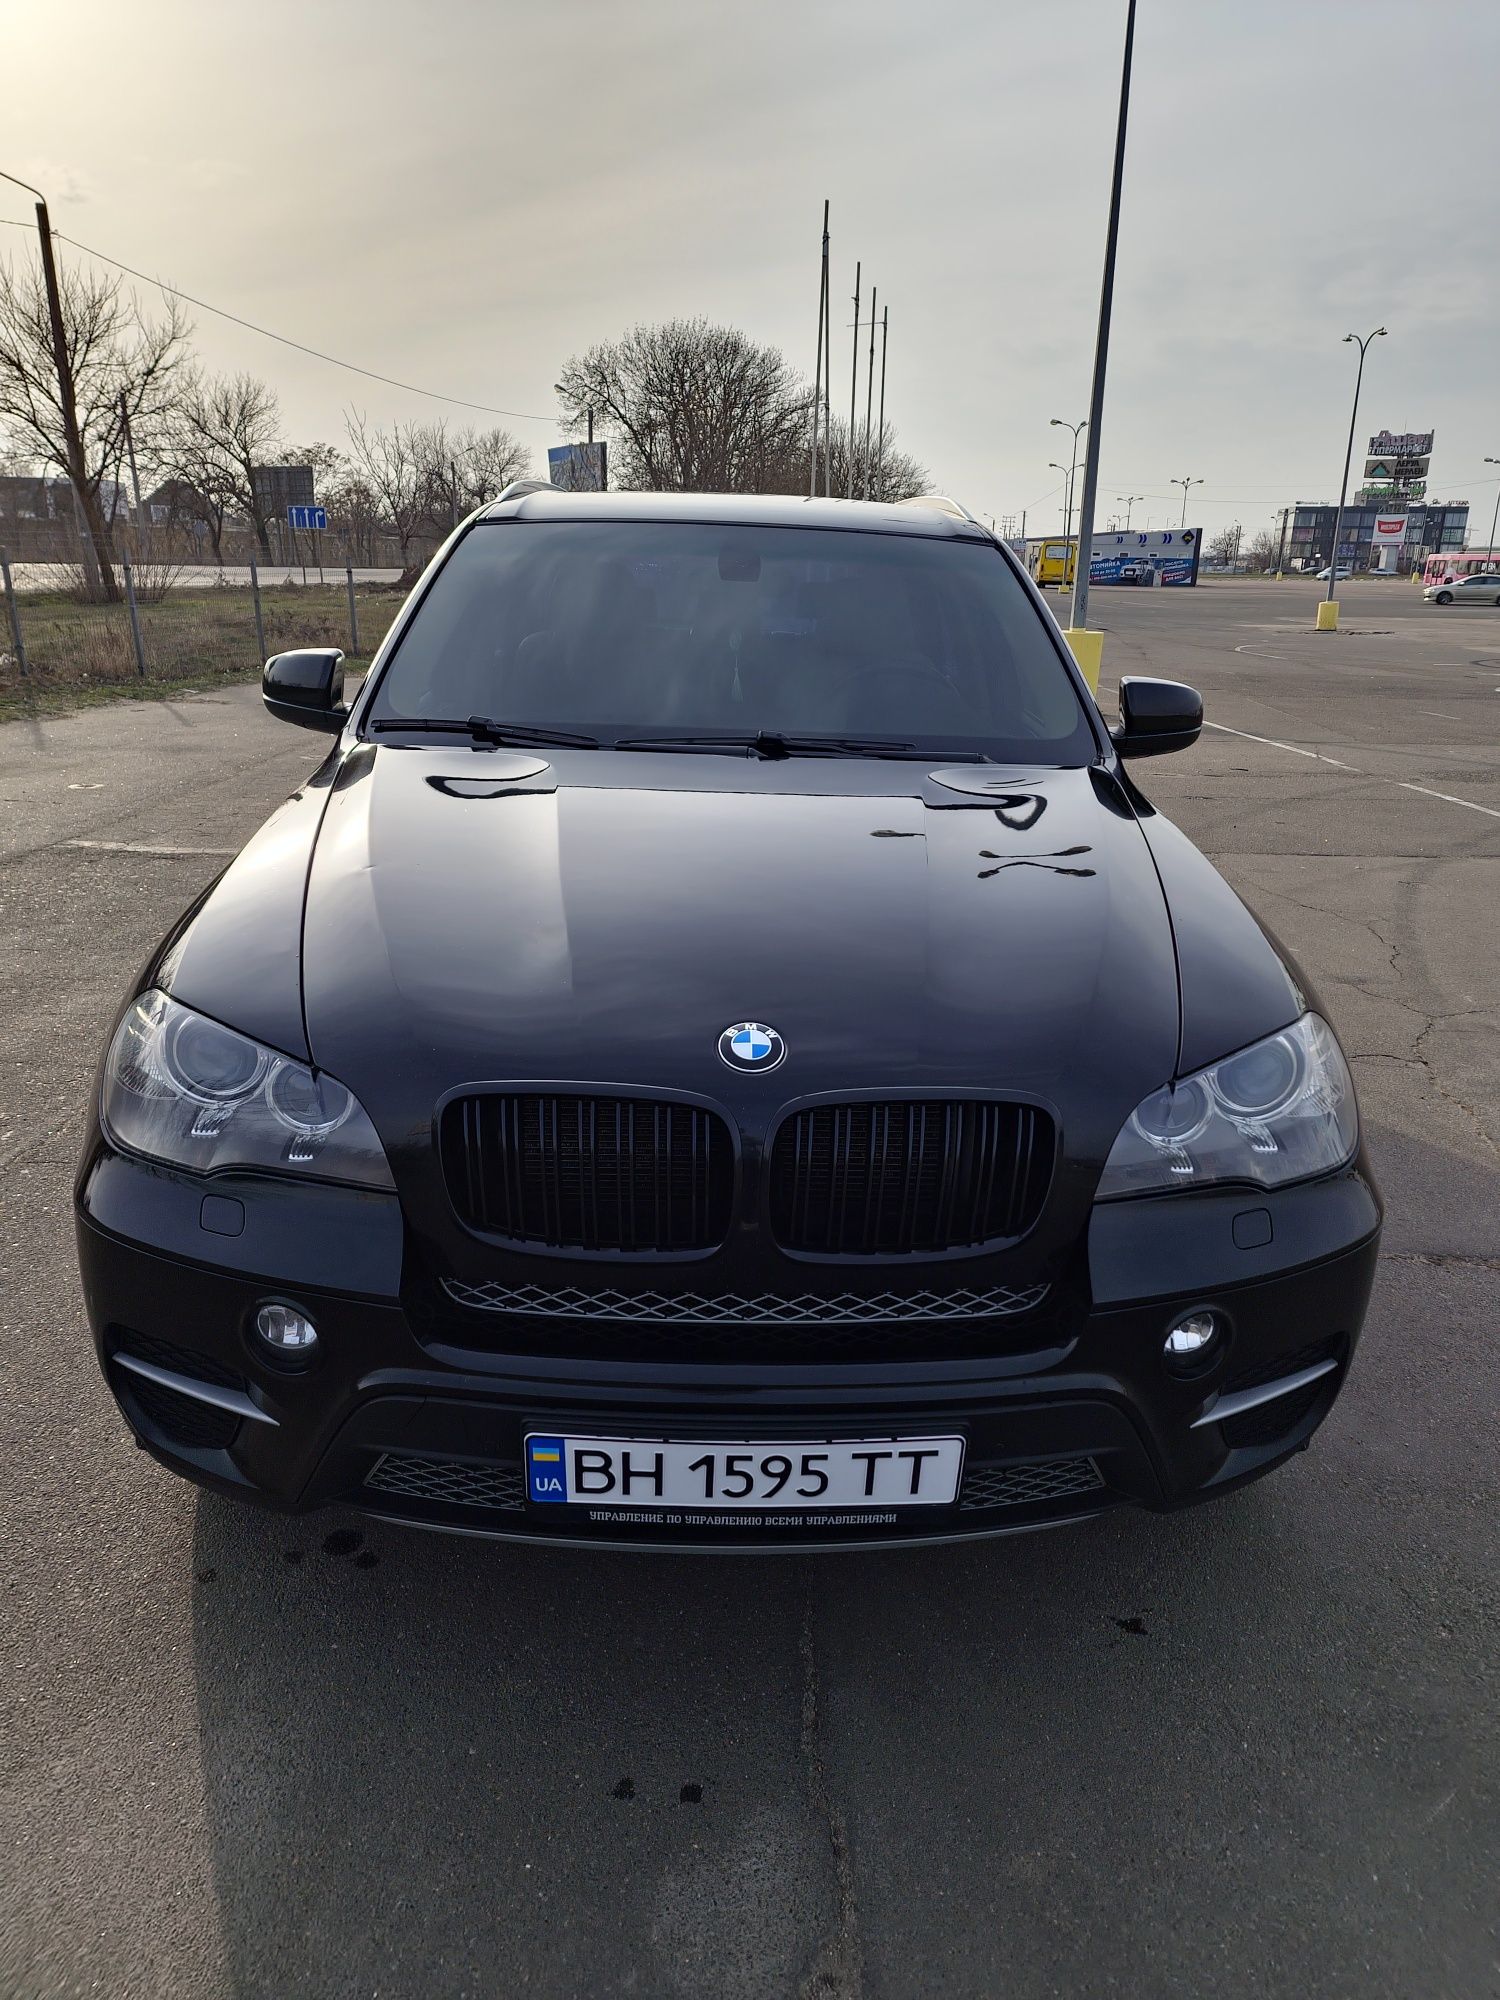 BMW x5 2012 (E70) FL EU